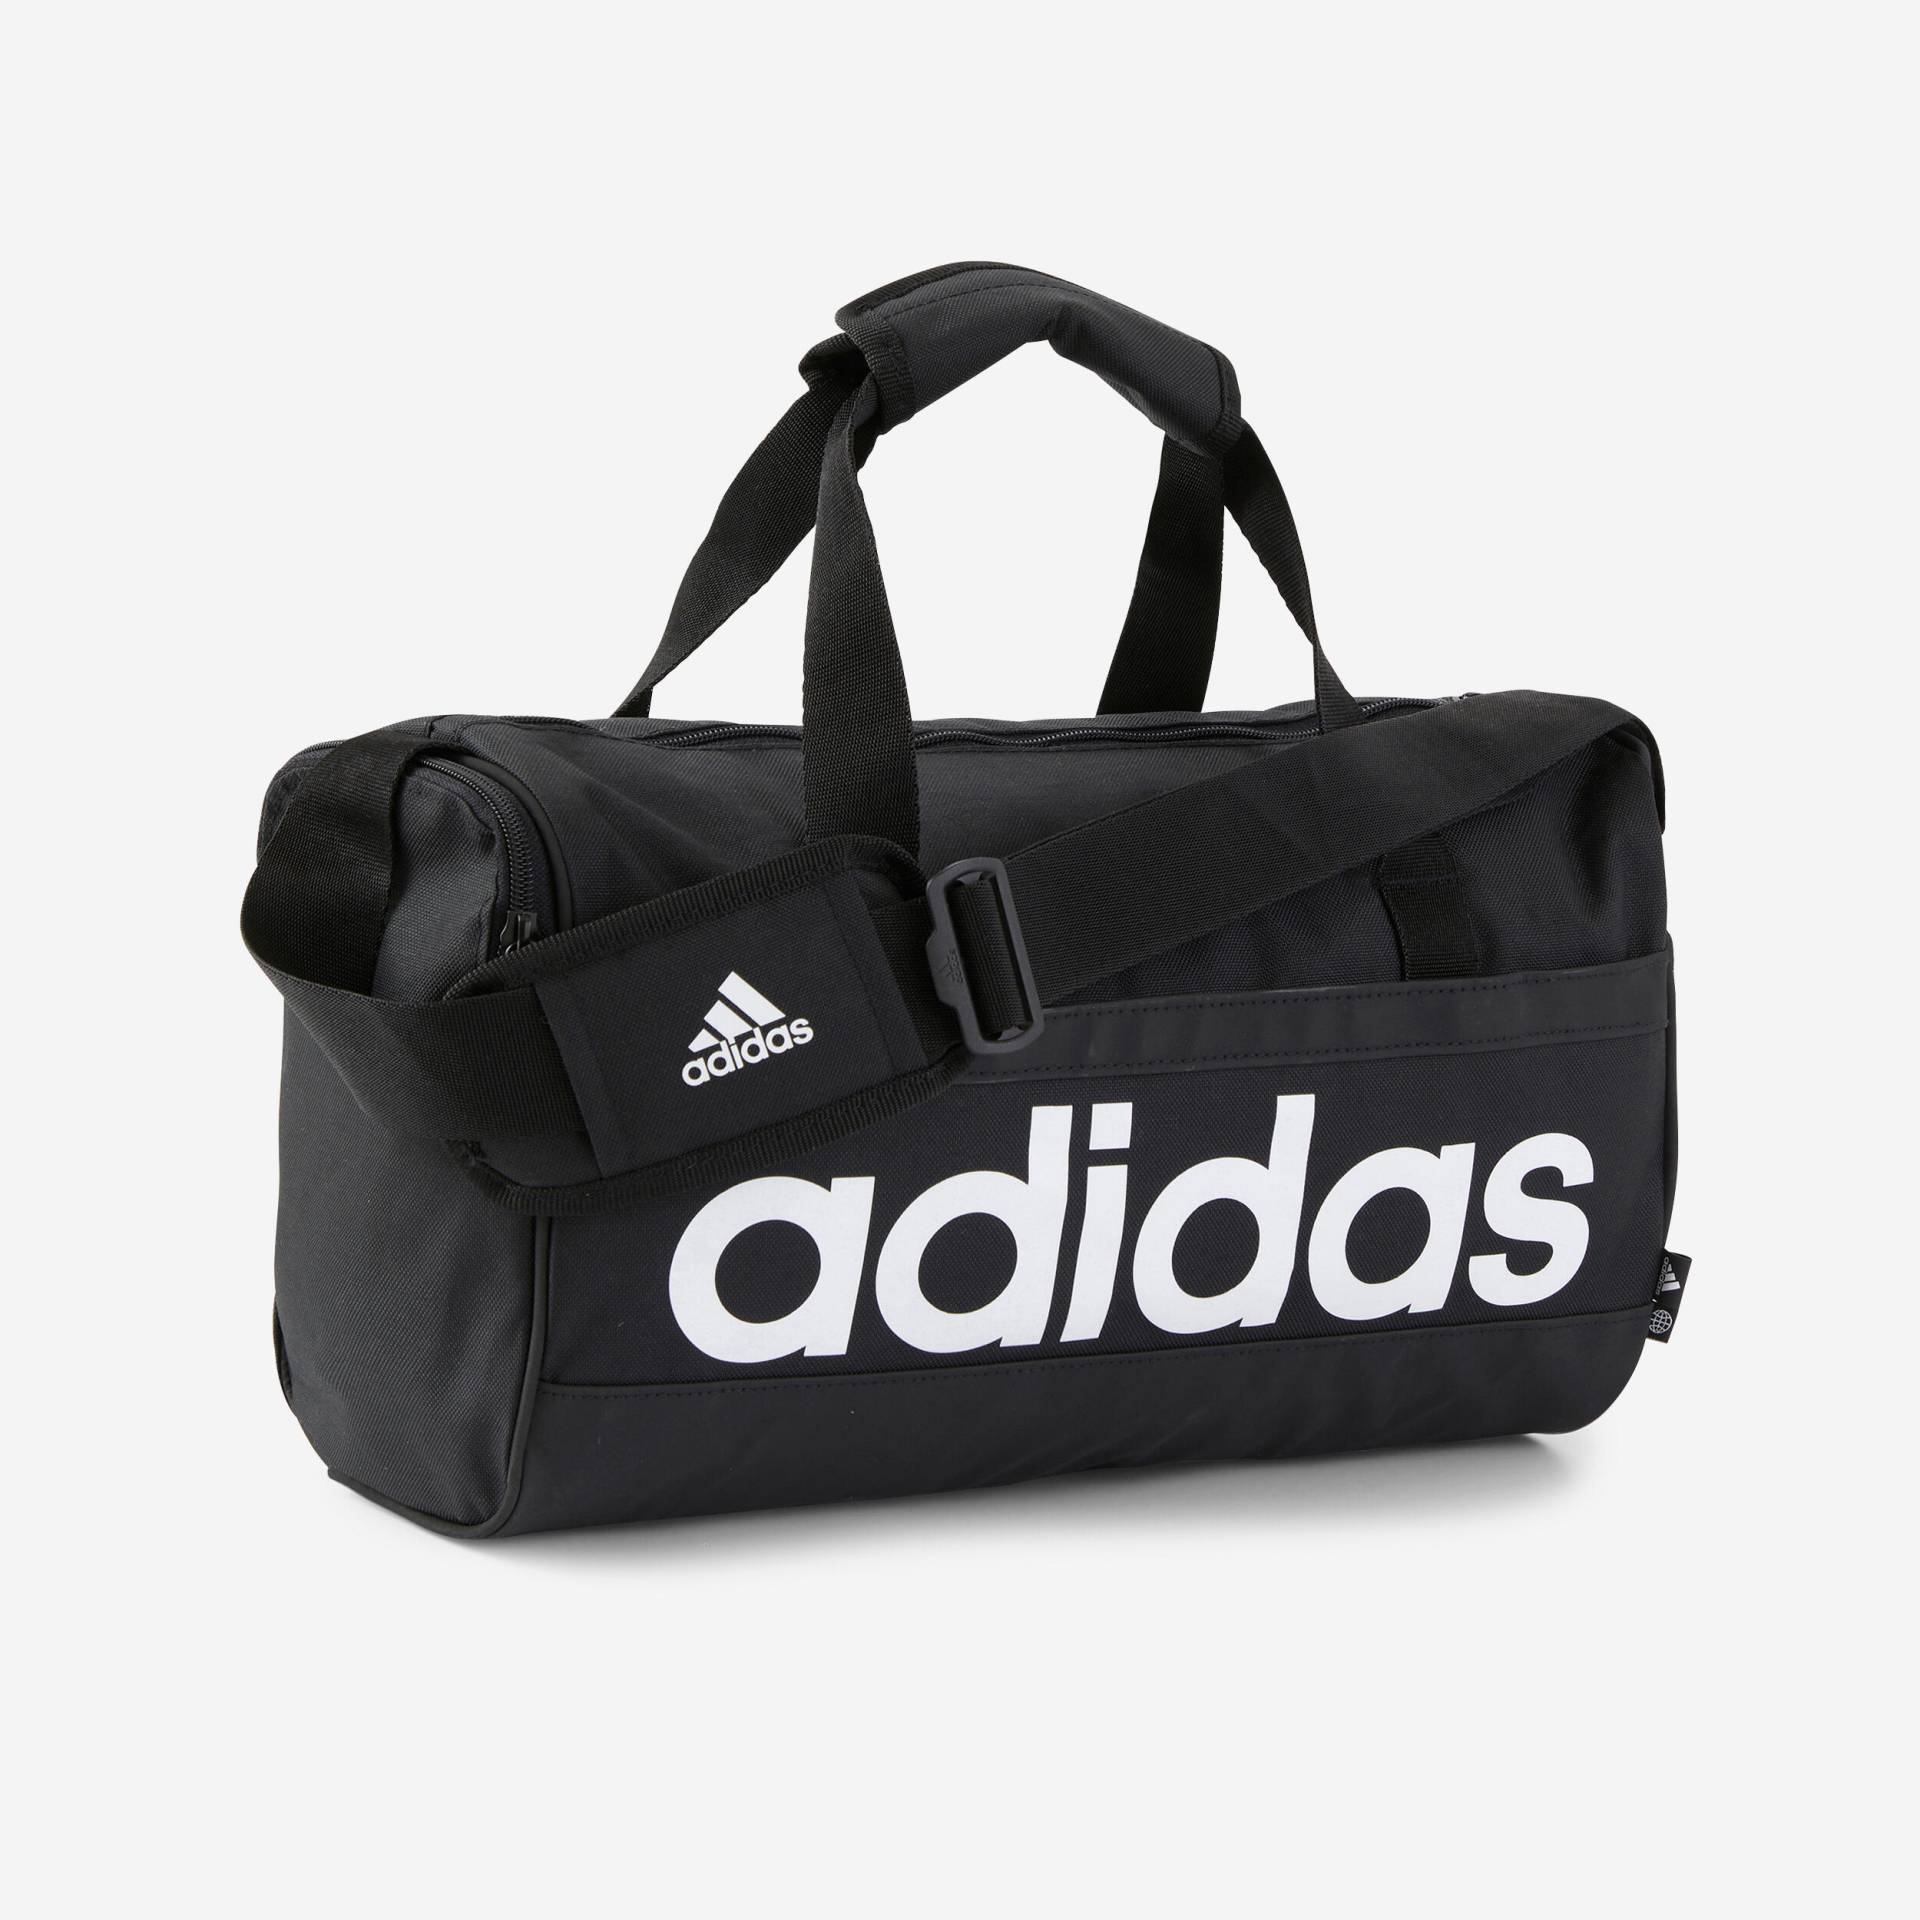 ADIDAS Sporttasche Duffle XS - schwarz/weiss von Adidas